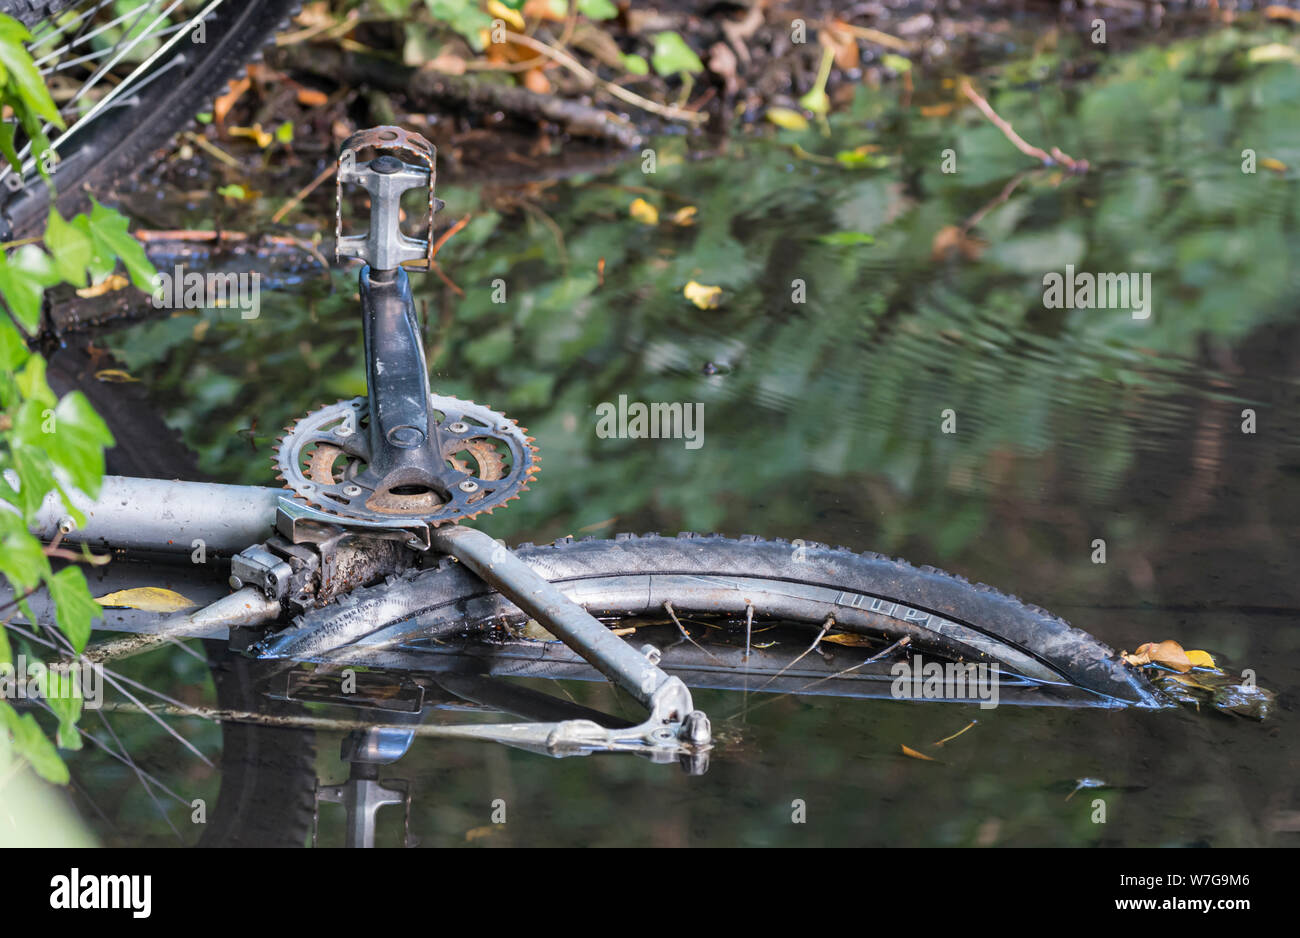 Casco de bicicleta, objeto de dumping vendidas o abandonadas en el agua en un arroyo o río. Bicicleta a podrirse. Foto de stock